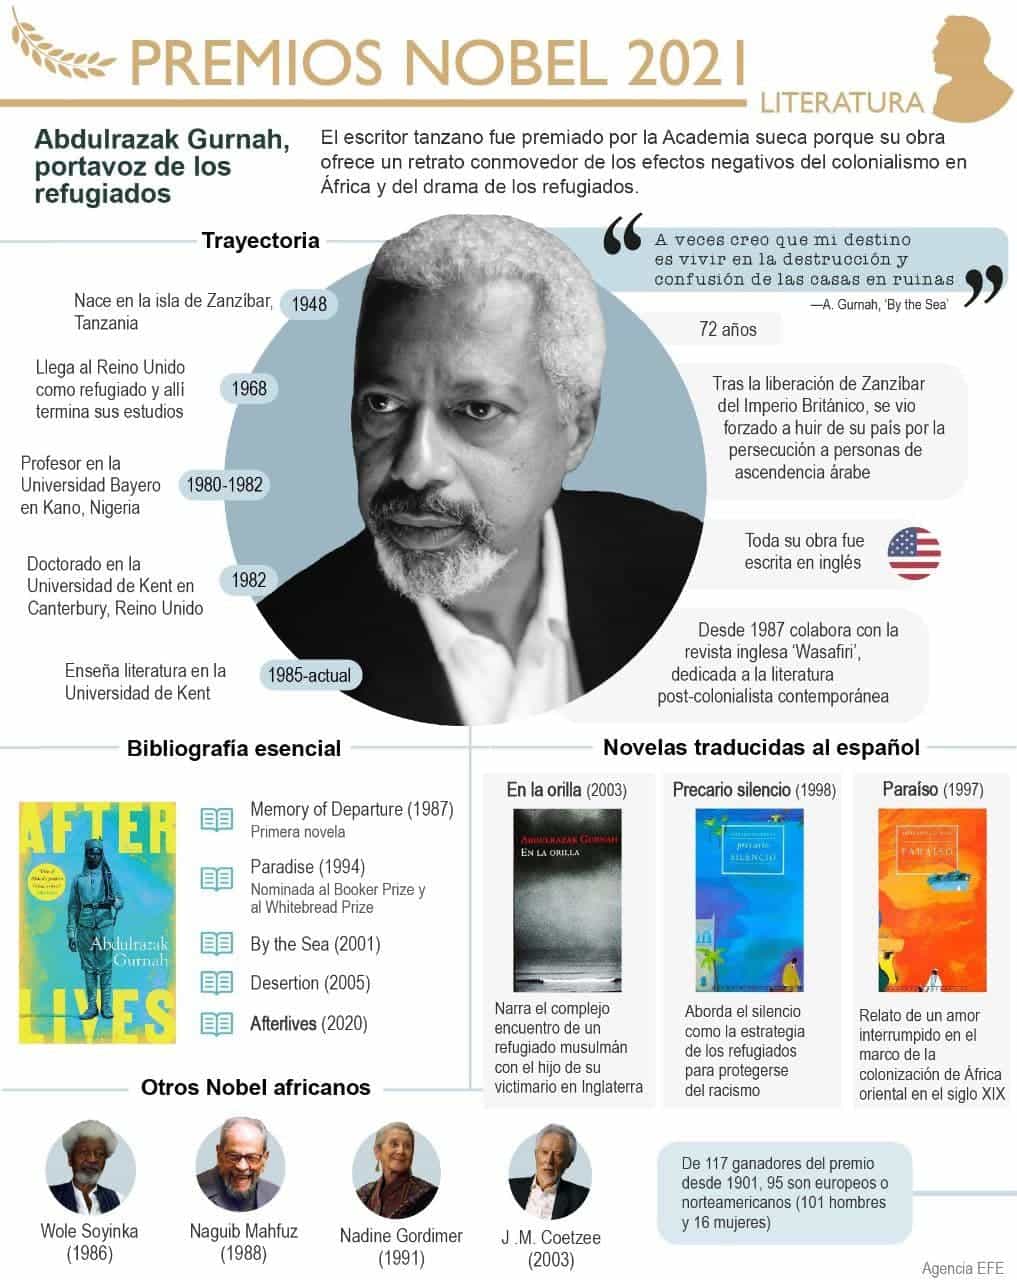 [Infografía] El tanzano Abdulrazak Gurnah, Premio Nobel de Literatura 2021 1